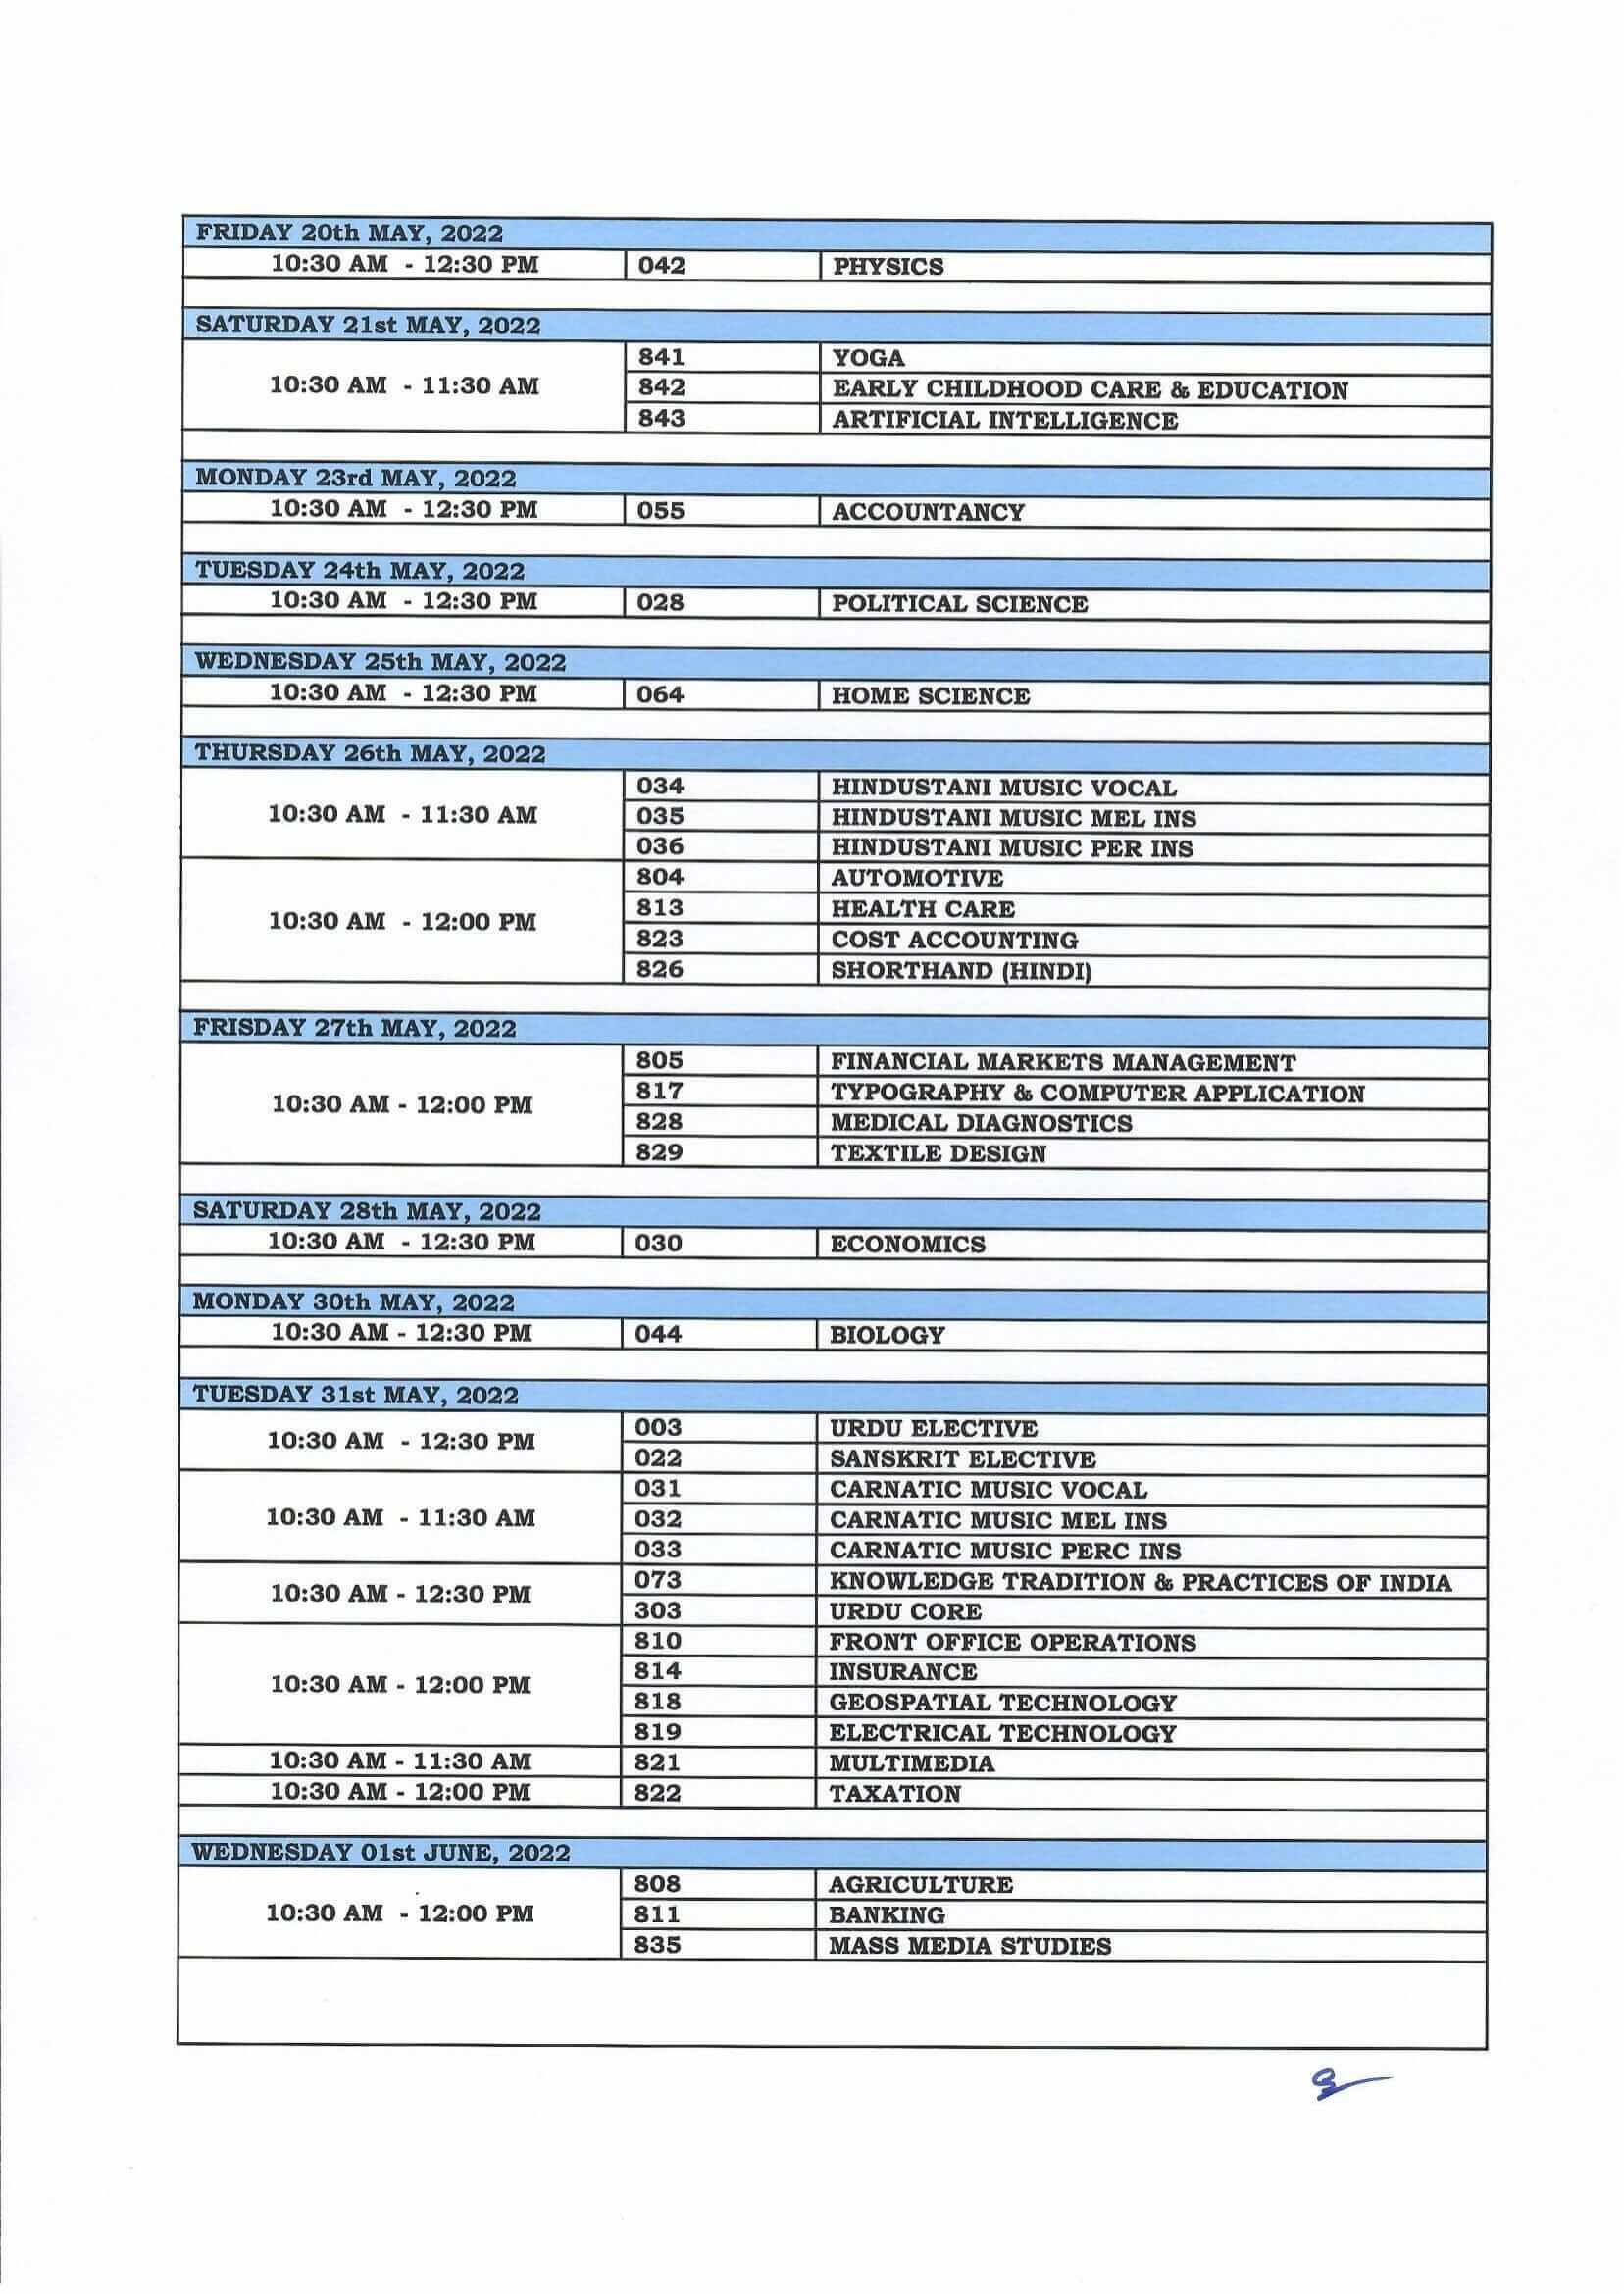 CBSE Date Sheet for Class 12 term 2